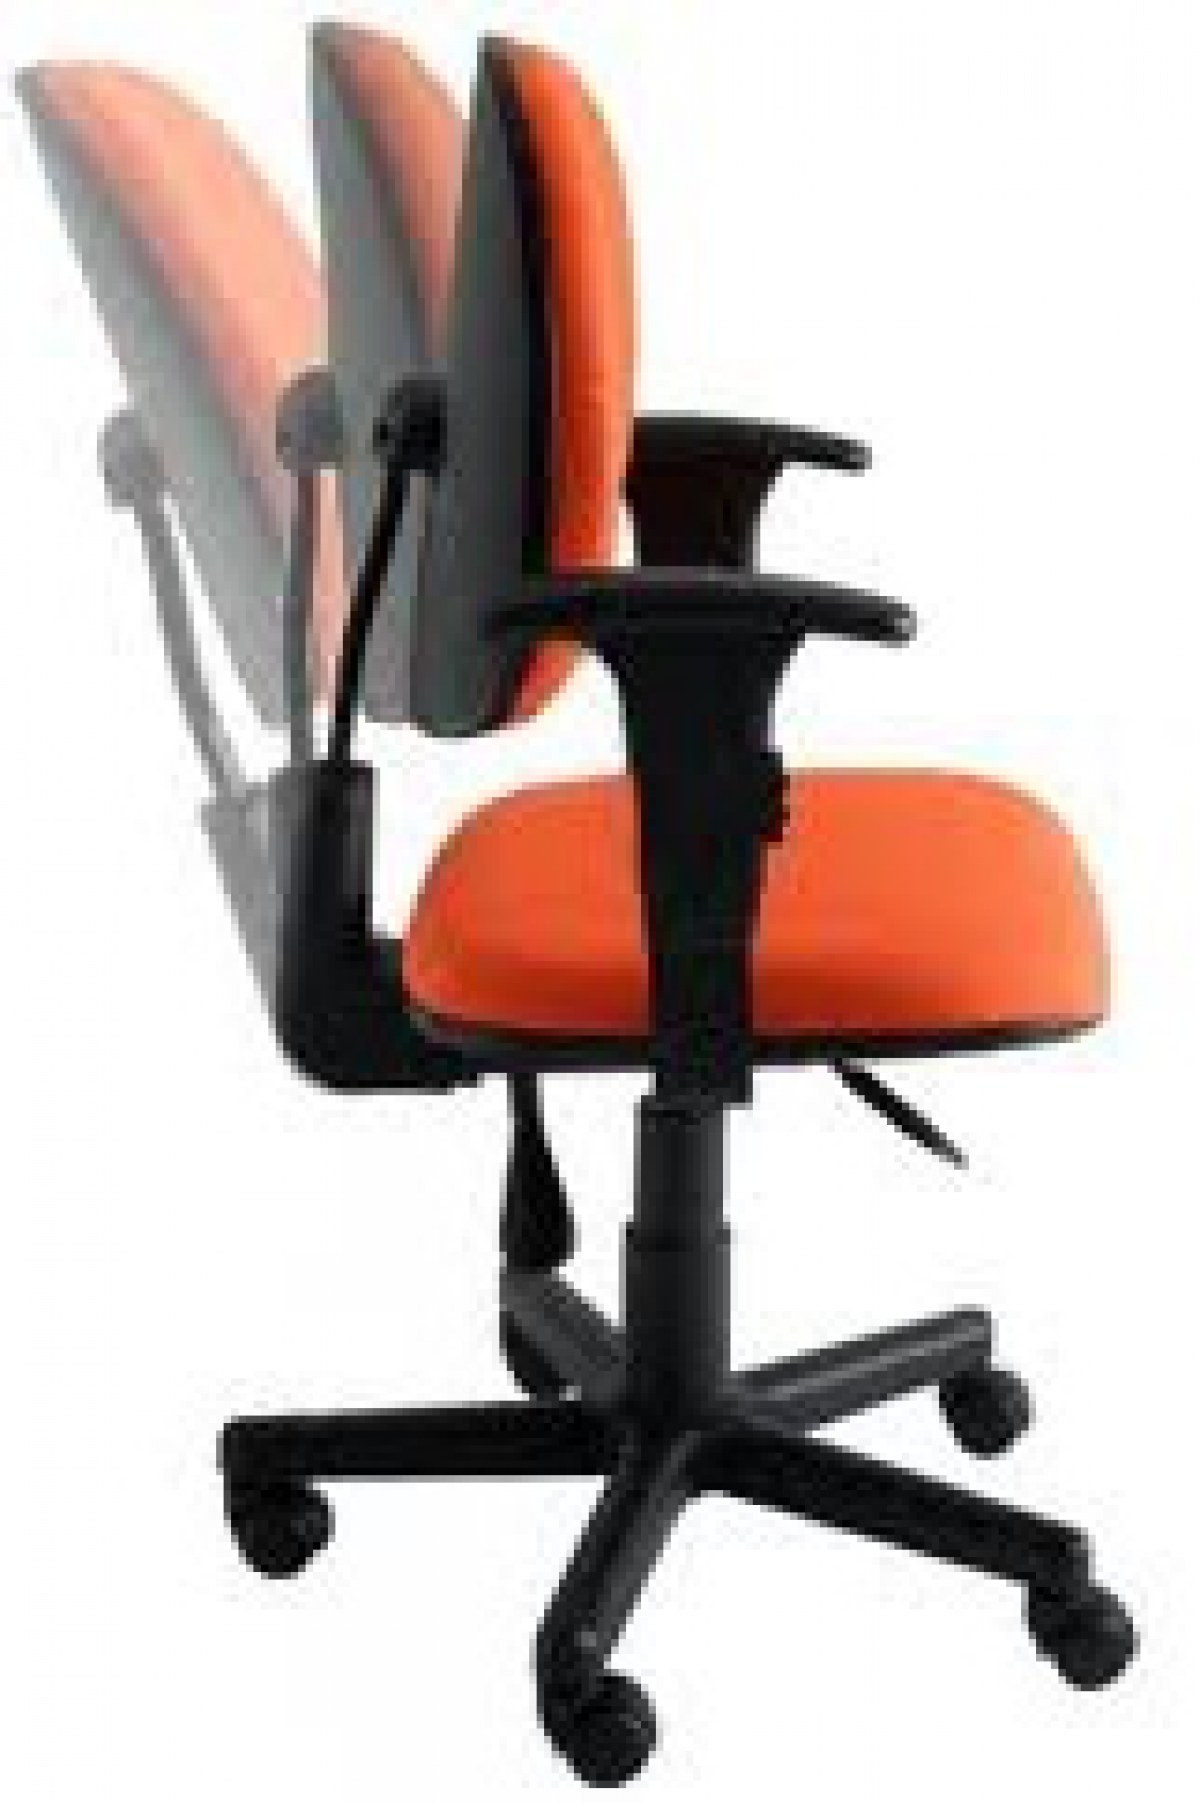 CAD - 25 Cadeira Para Escritório Blak System Executiva Com Braço Giratoria Estofada Varias Cores